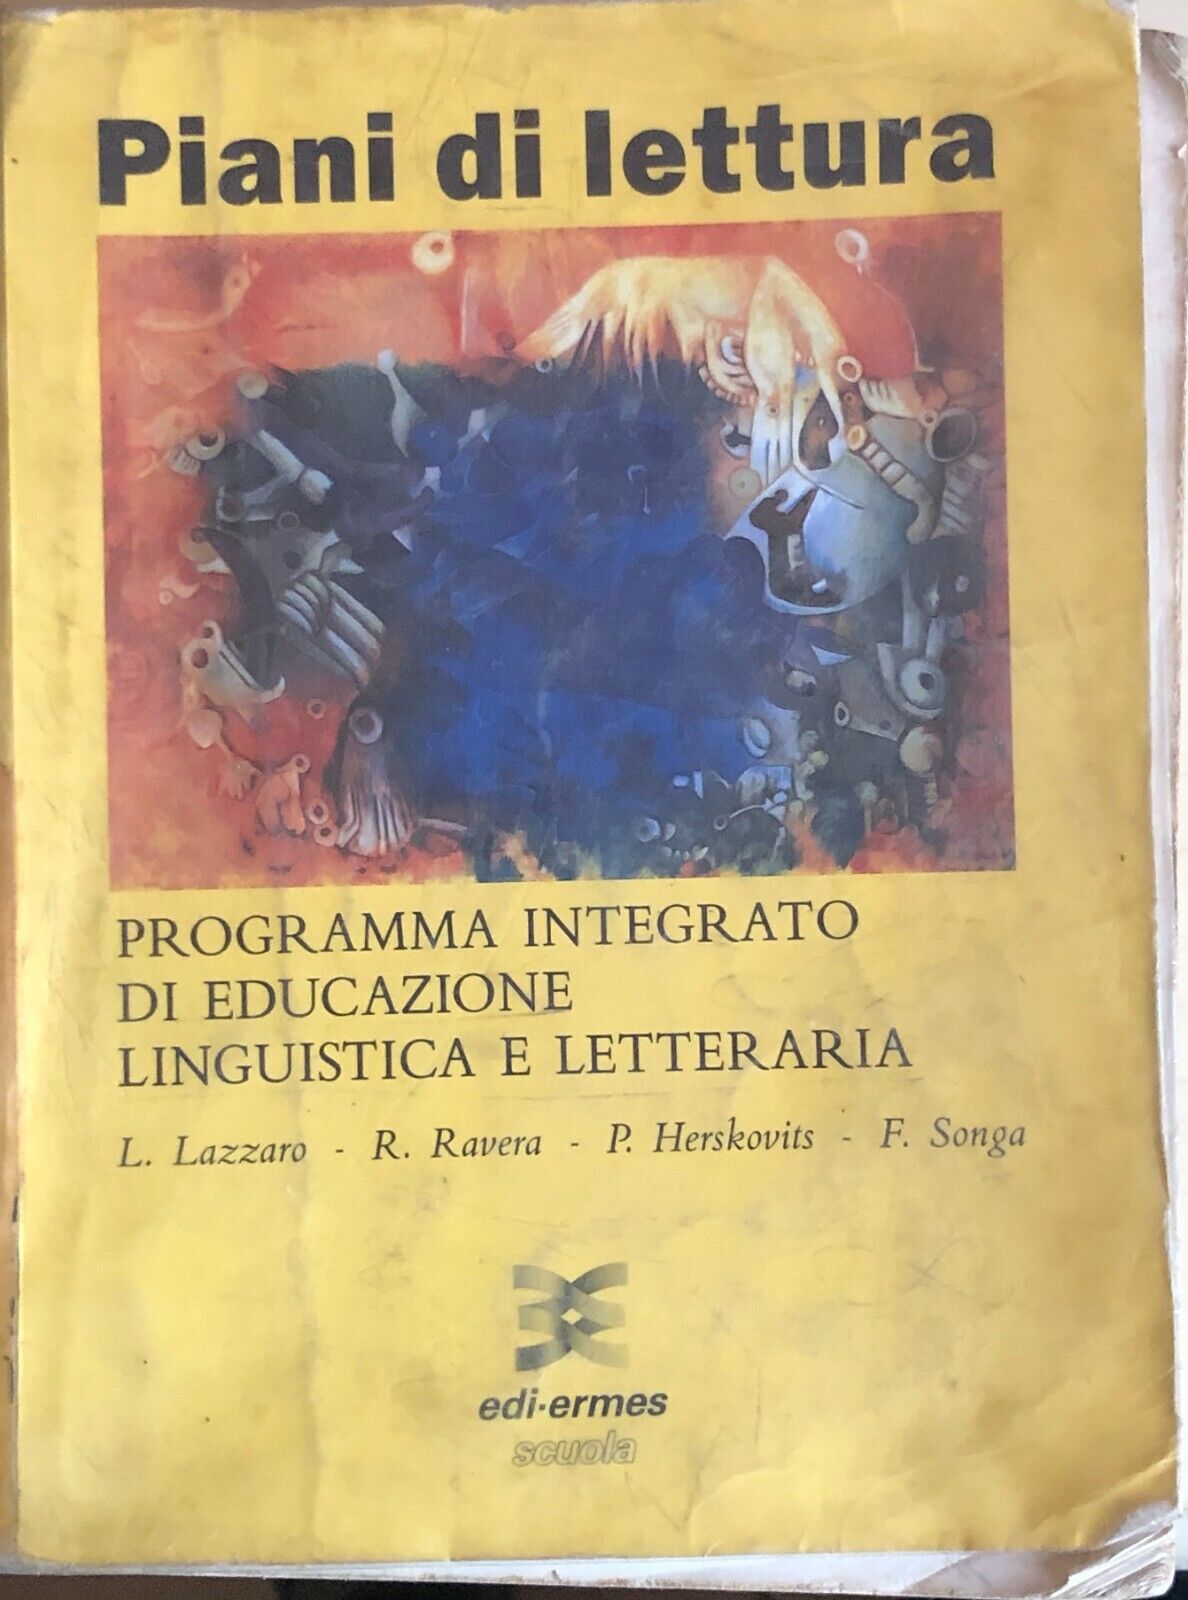 Piani di lettura, programma integrato di ed. ling. di AA.VV., 1993, Edi-Ermes